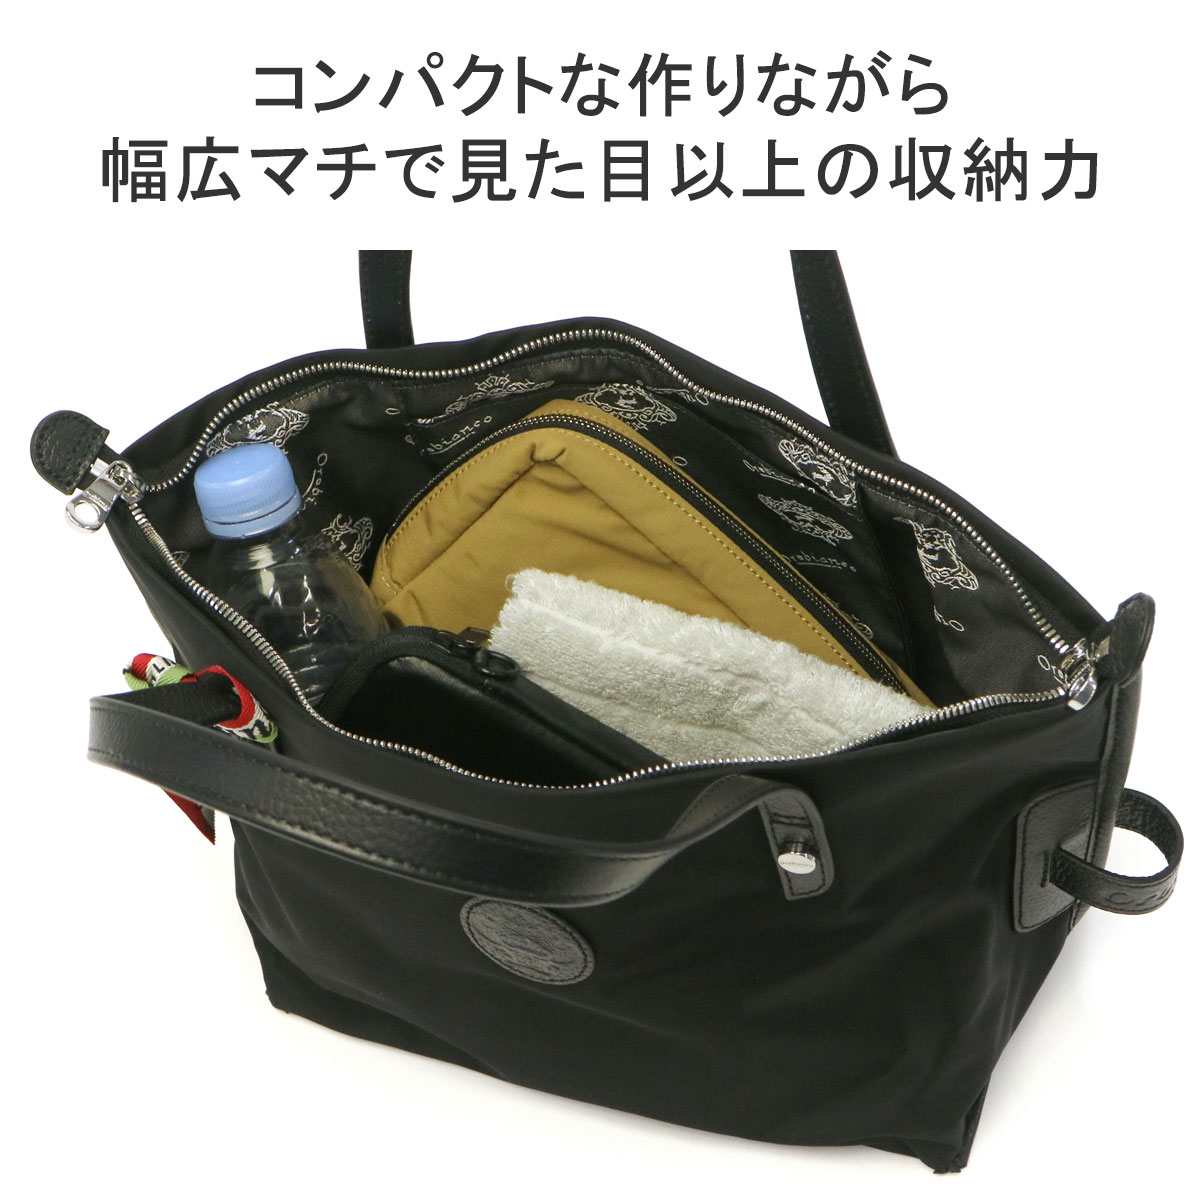 セール30%OFF 日本正規品 オロビアンコ トートバッグ メンズ 